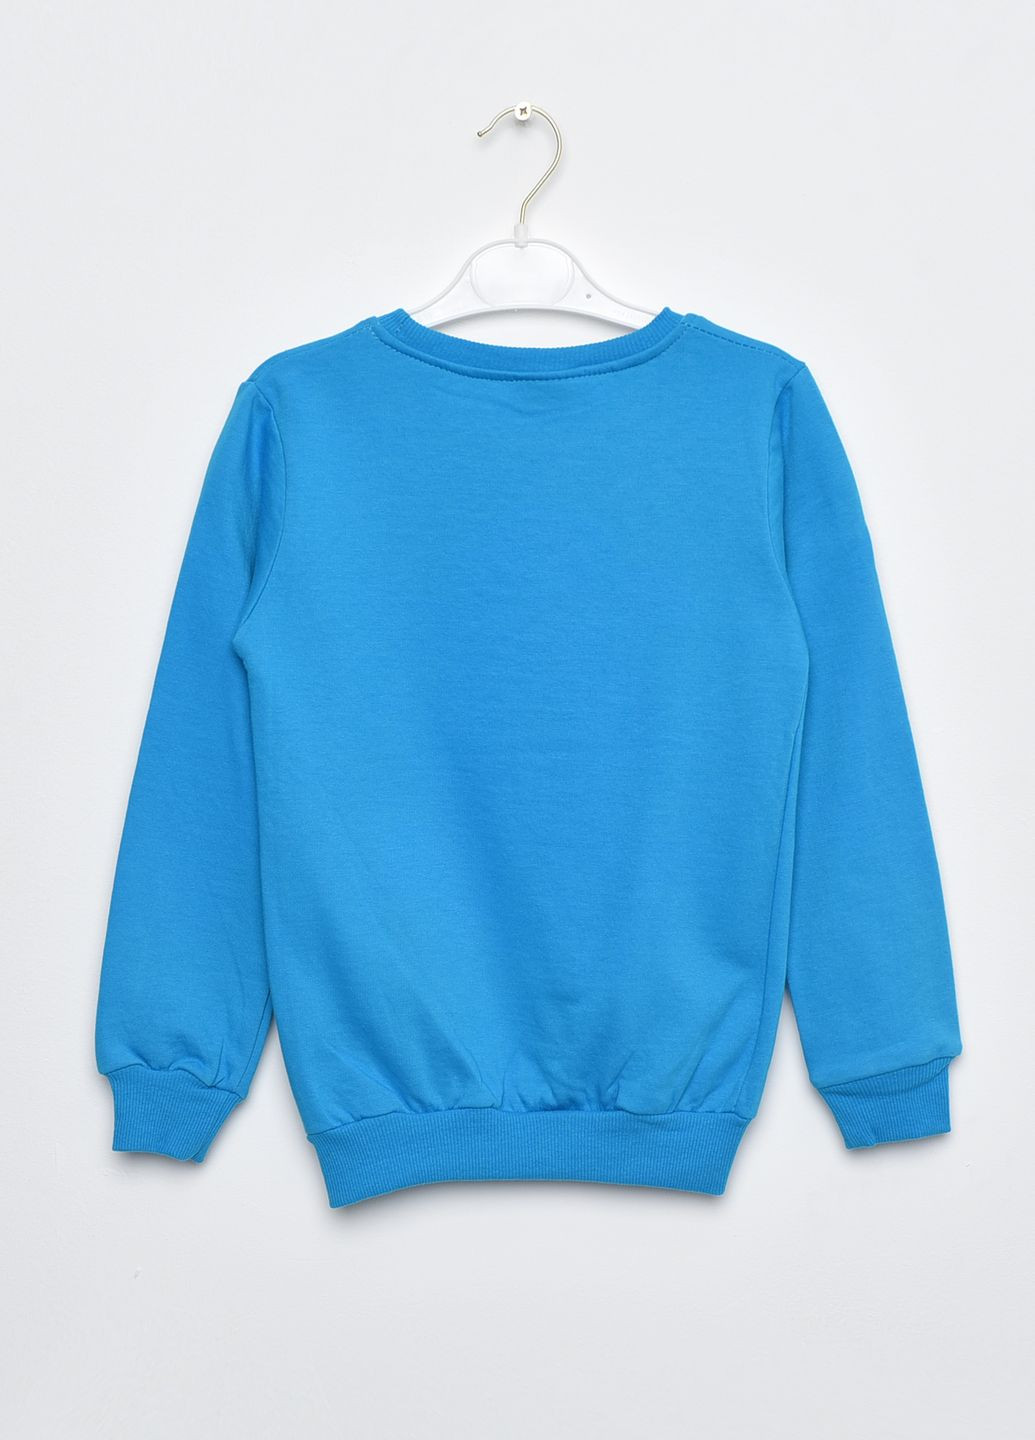 Синій демісезонний батник дитячий для хлопчика на флісі синього кольору пуловер Let's Shop